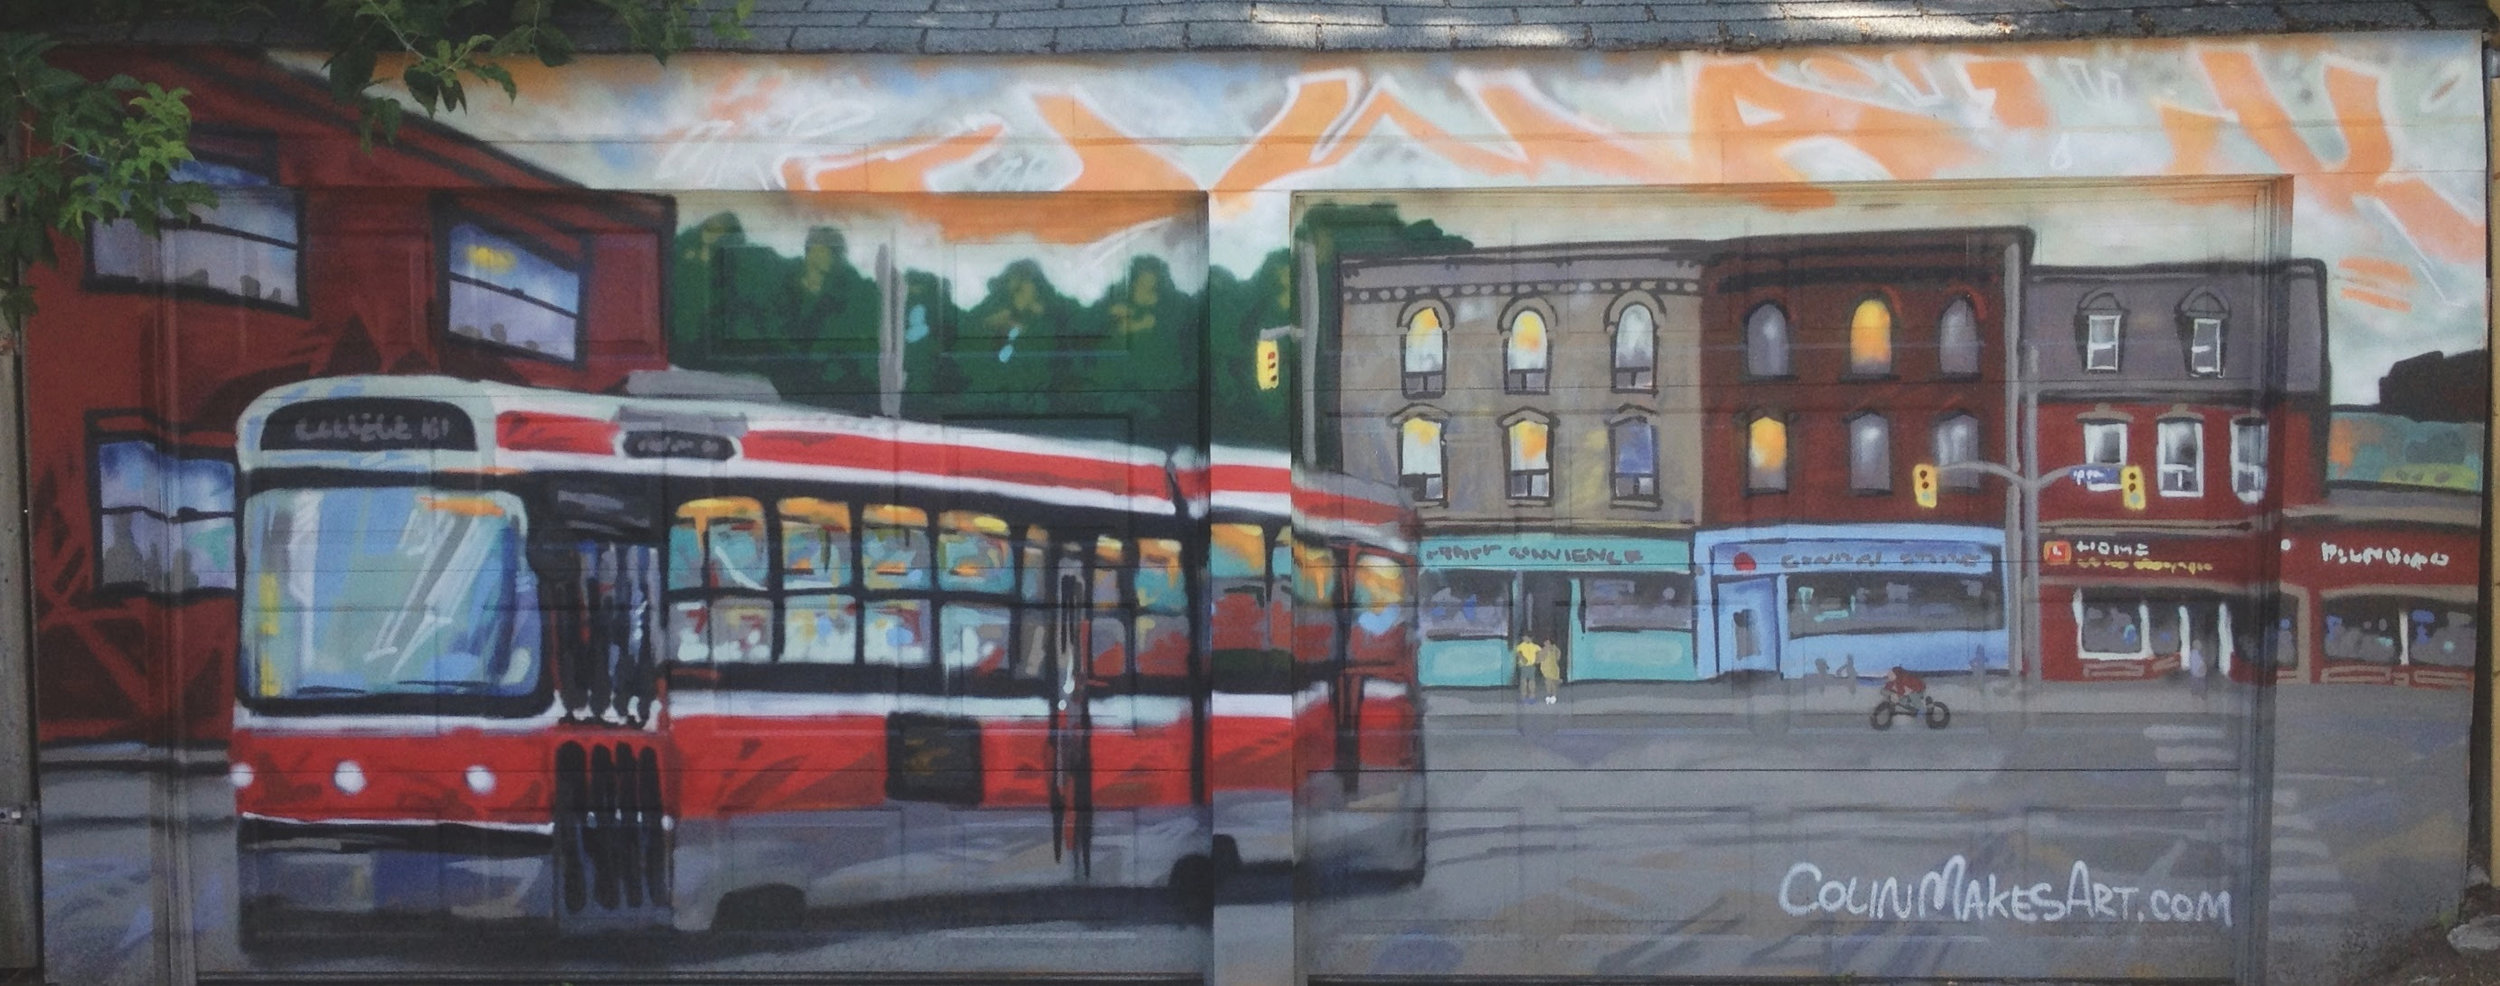 Carlton Streetcar Mural in Toronto